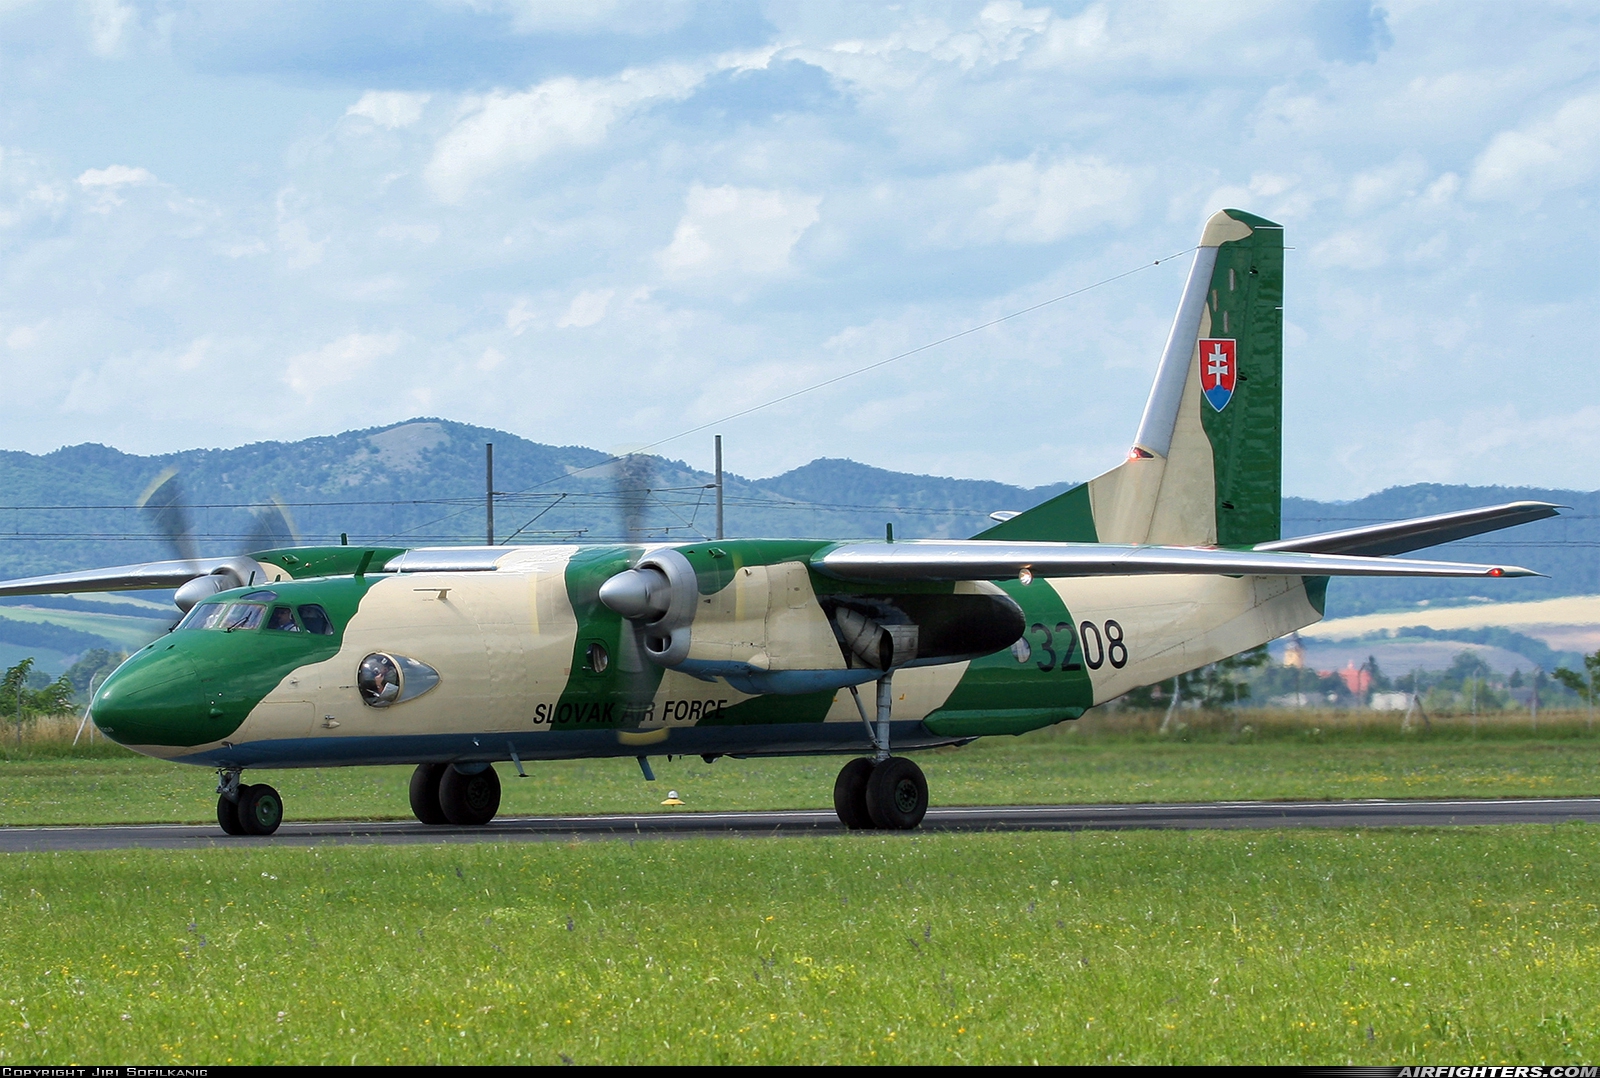 Slovakia - Air Force Antonov An-26B 3208 at Piestany (PZY / LZPP), Slovakia